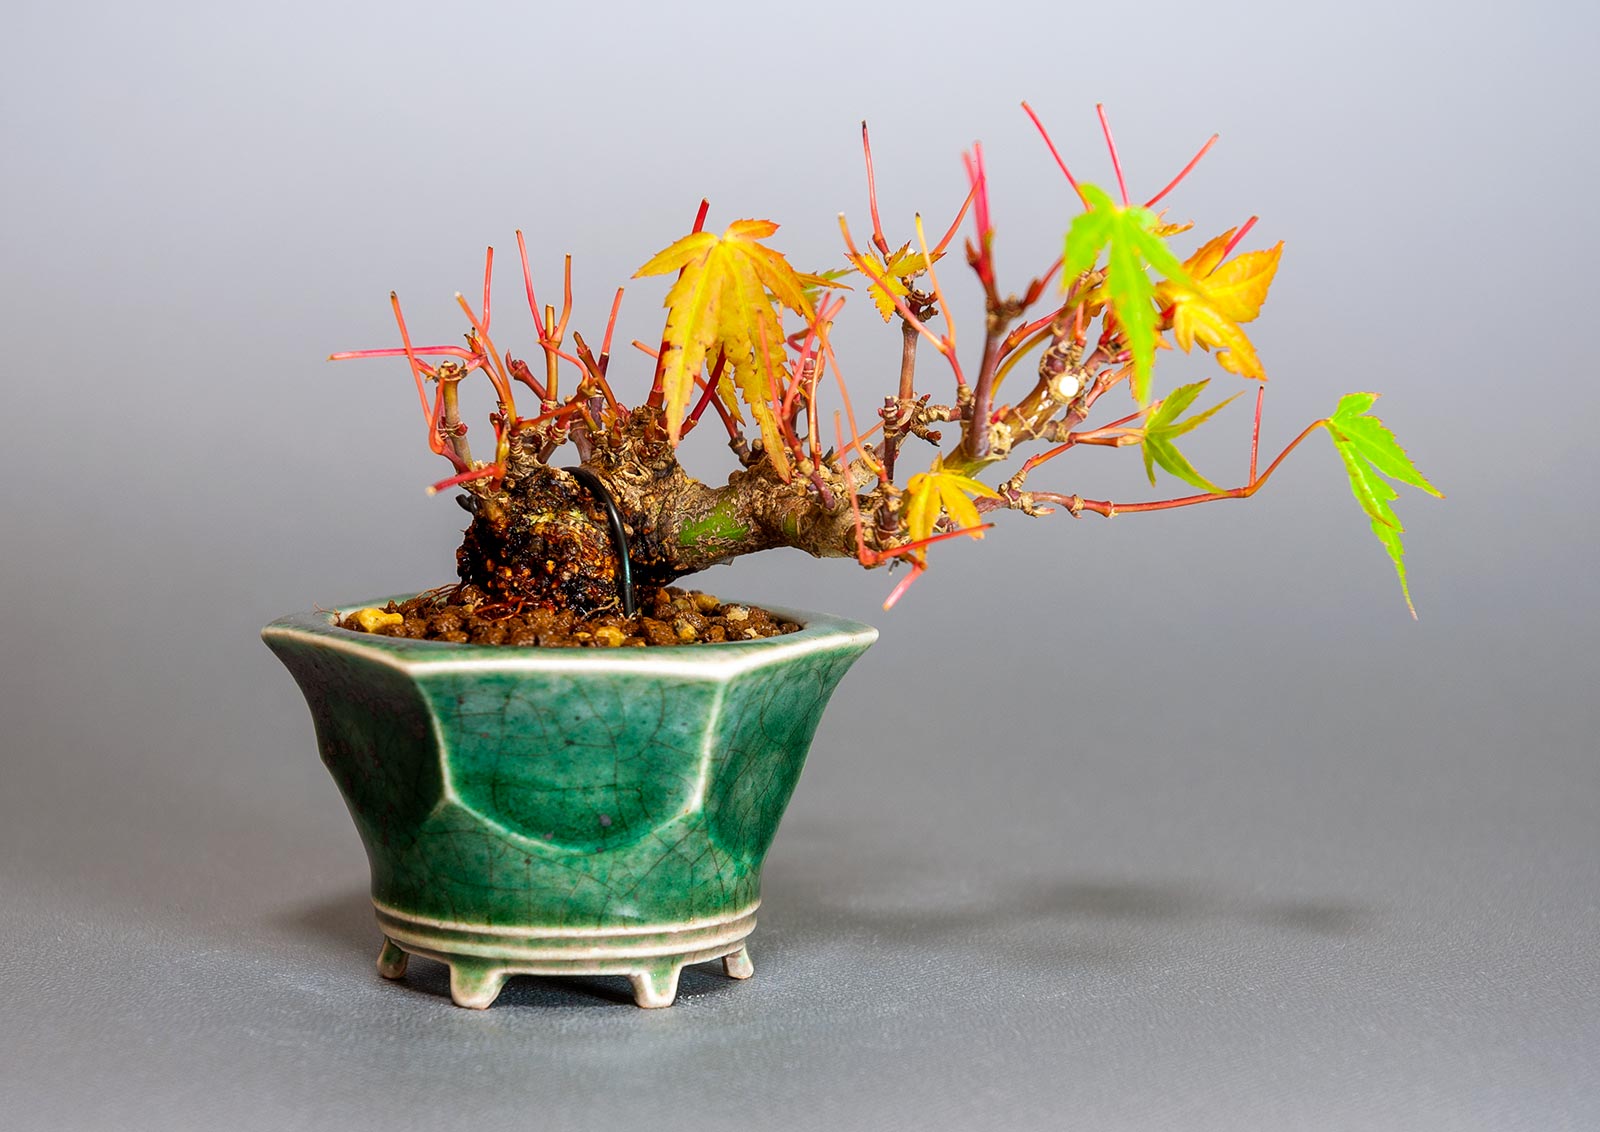 イロハモミジ-L1（いろはもみじ・いろは紅葉）雑木盆栽の販売と育て方・作り方・Acer palmatum bonsai